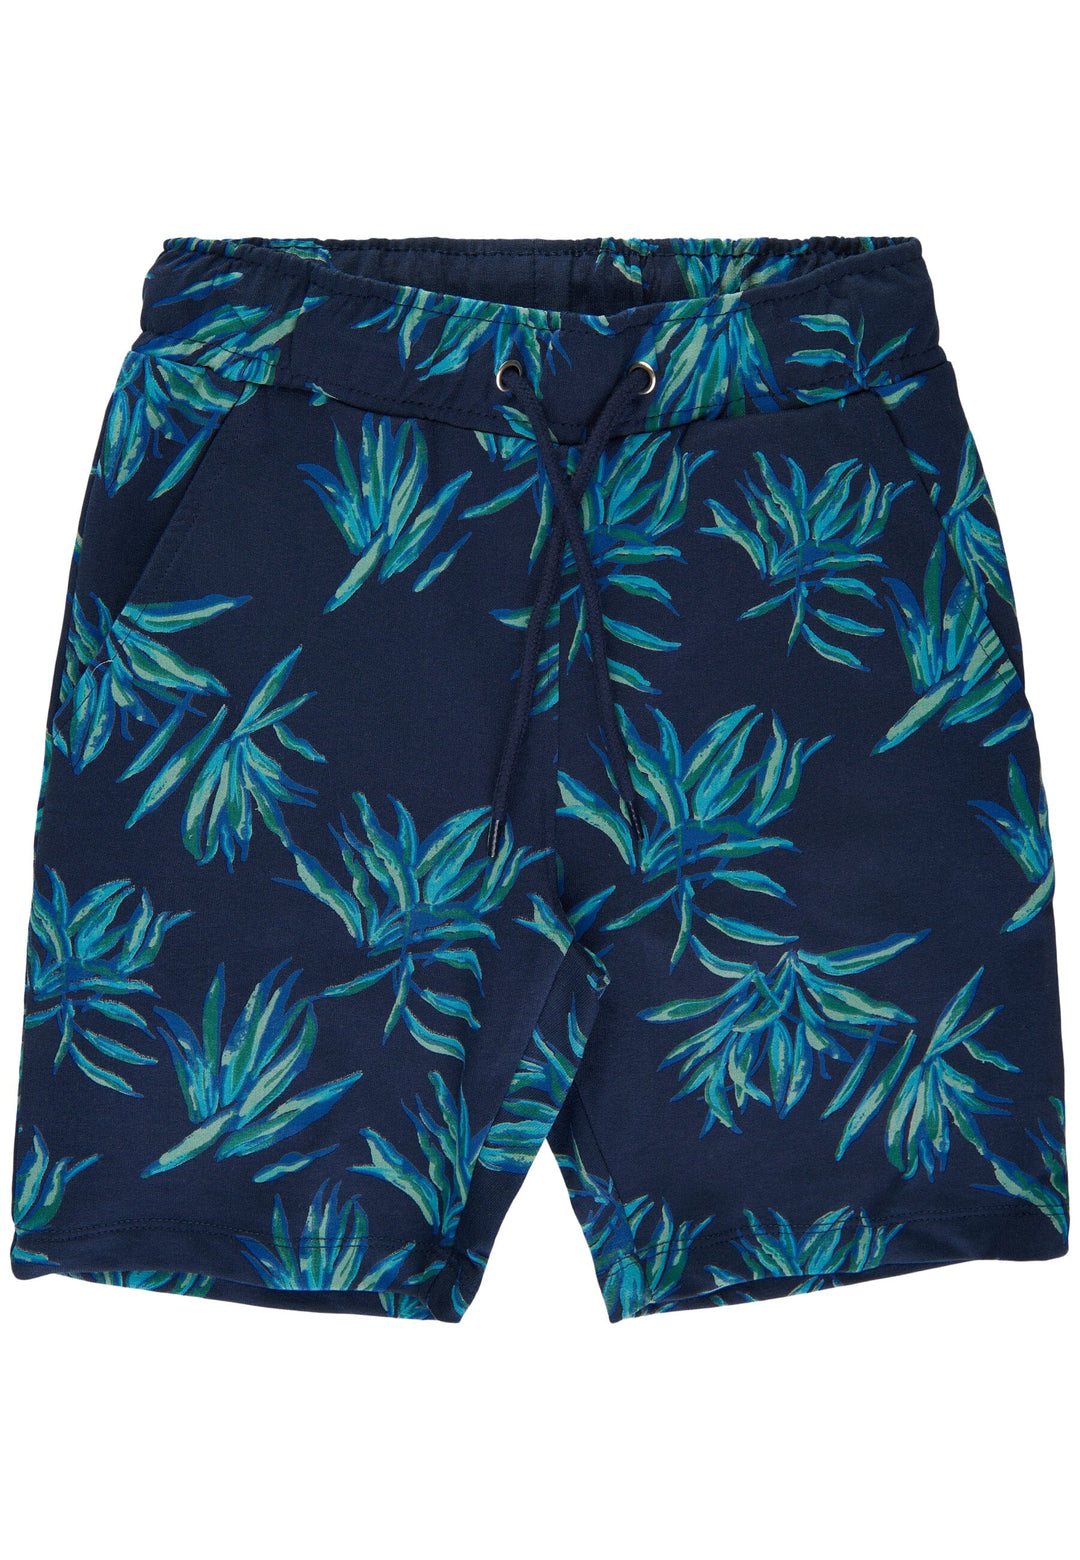 The New - Tngenuine Shorts - Navy Blazer Leaf Aop Shorts 